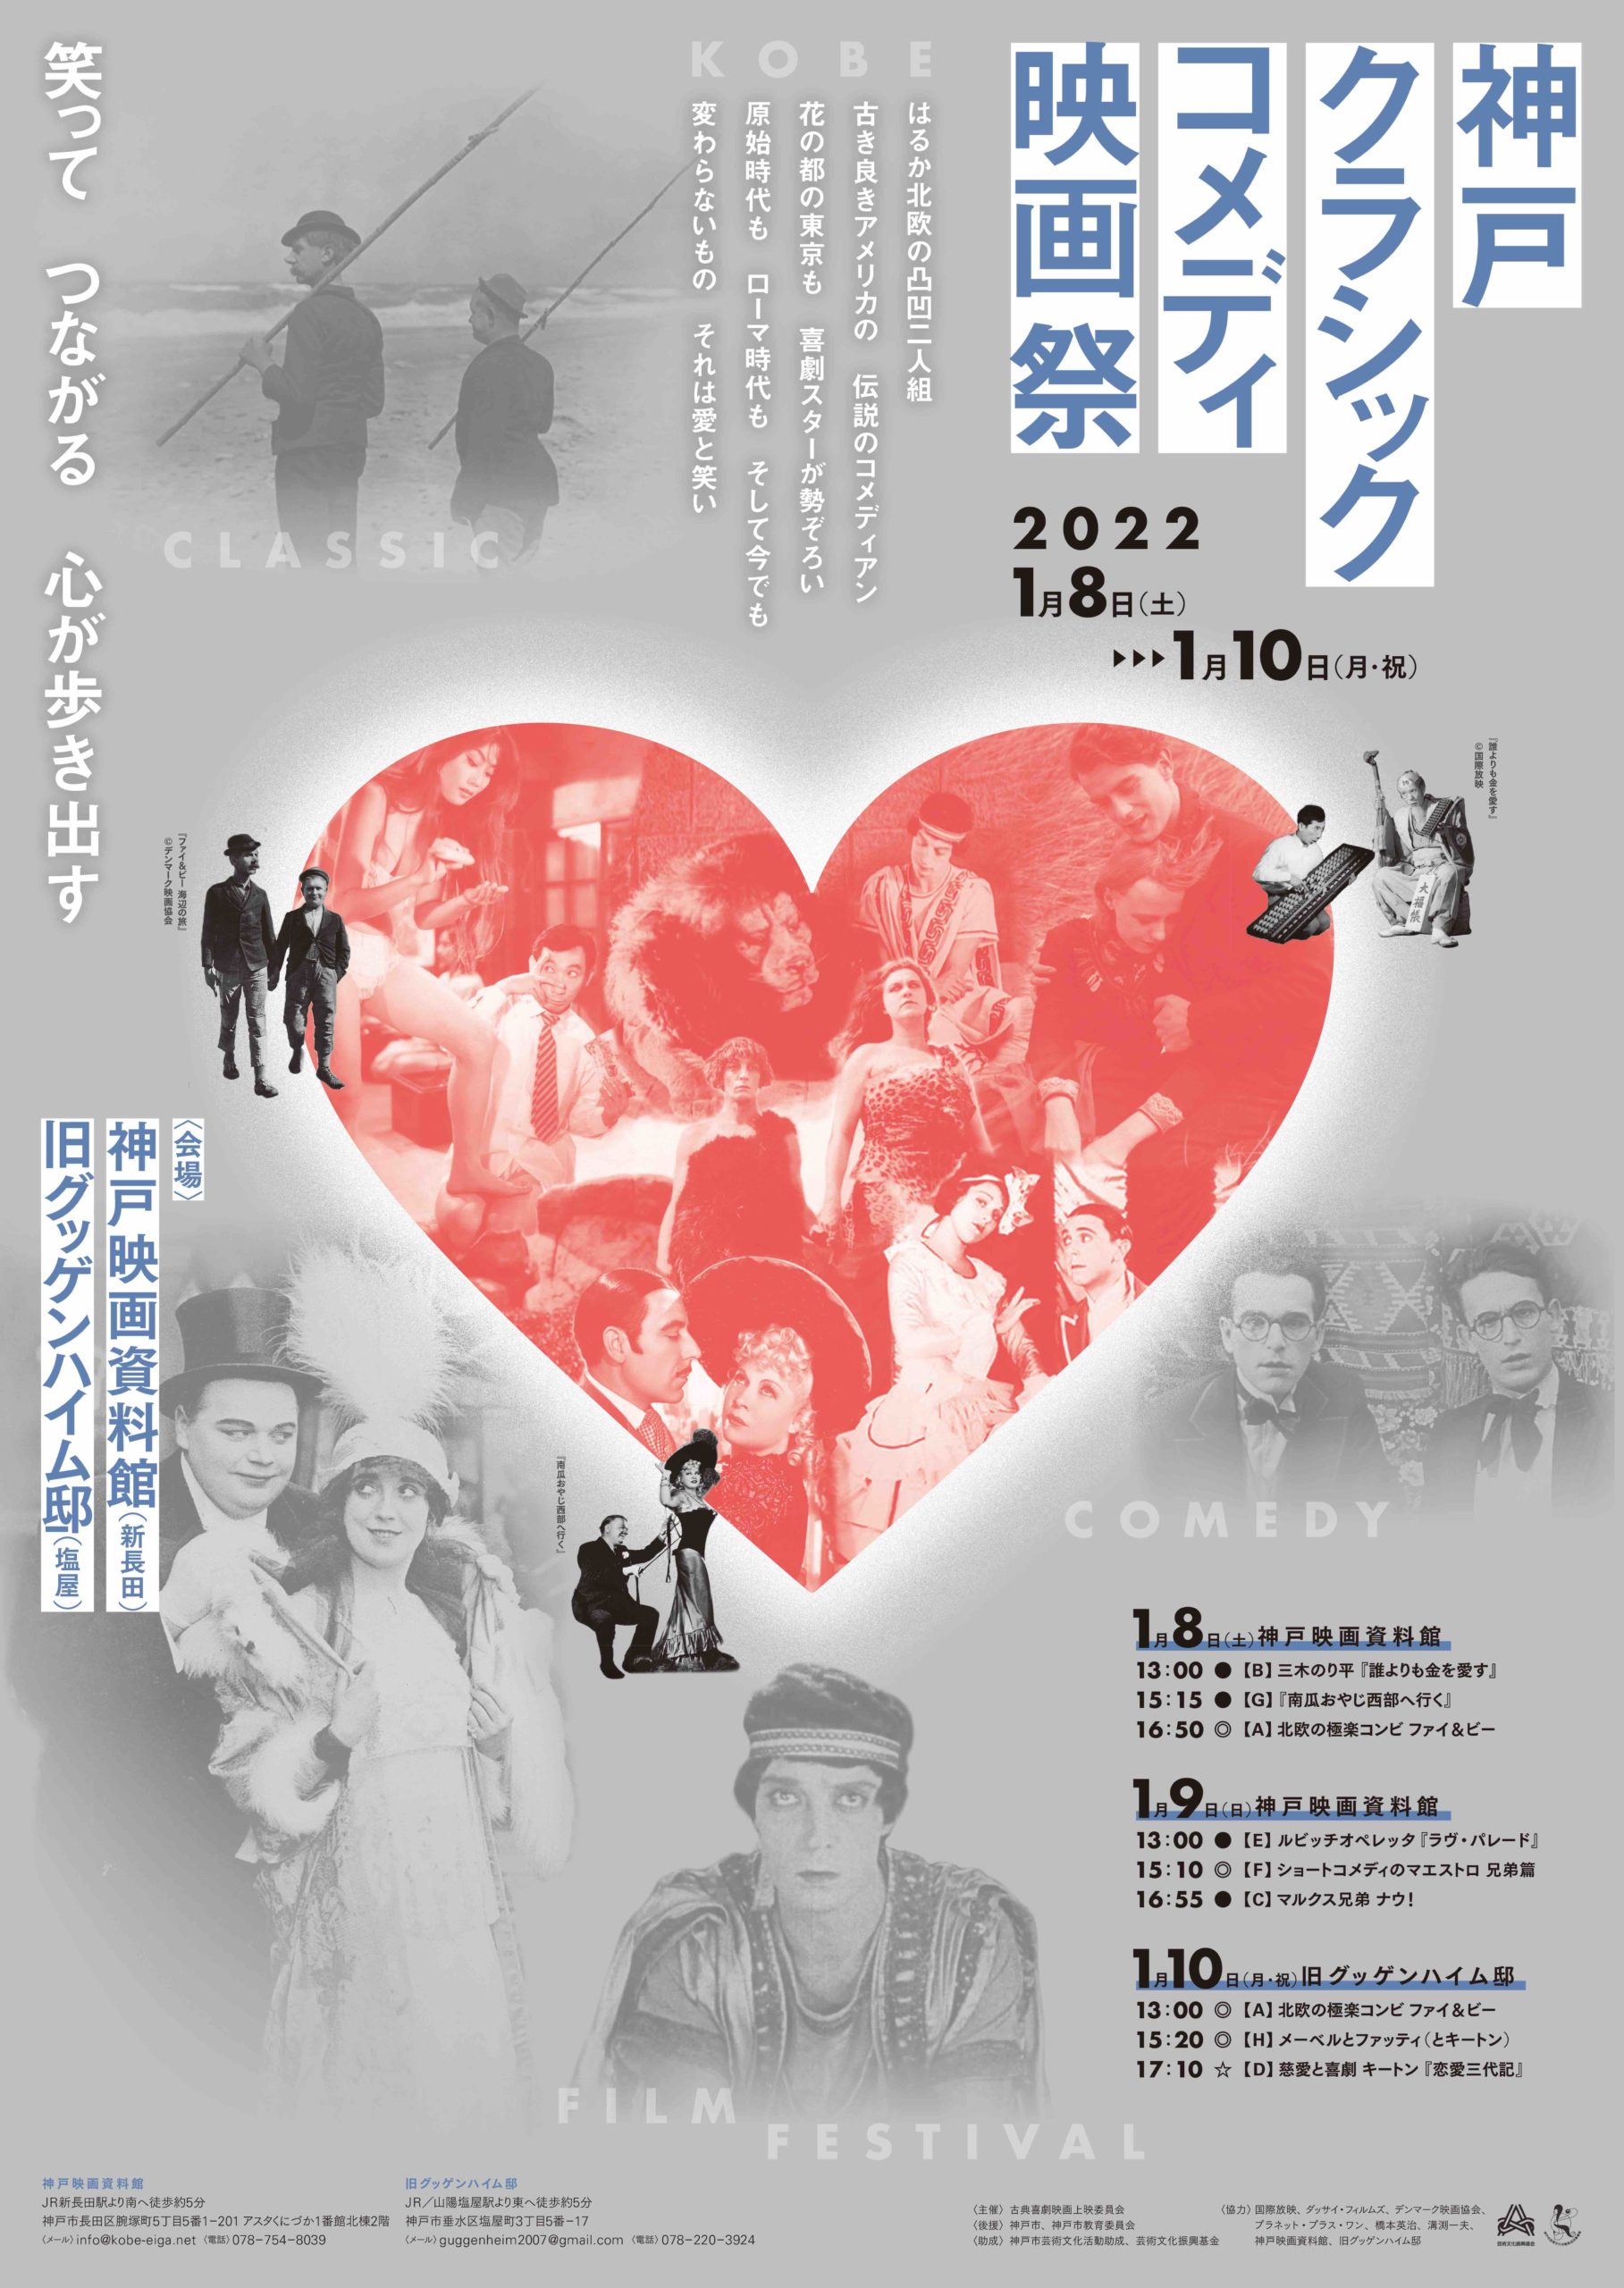 神戸クラシックコメディ映画祭22 神戸映画資料館